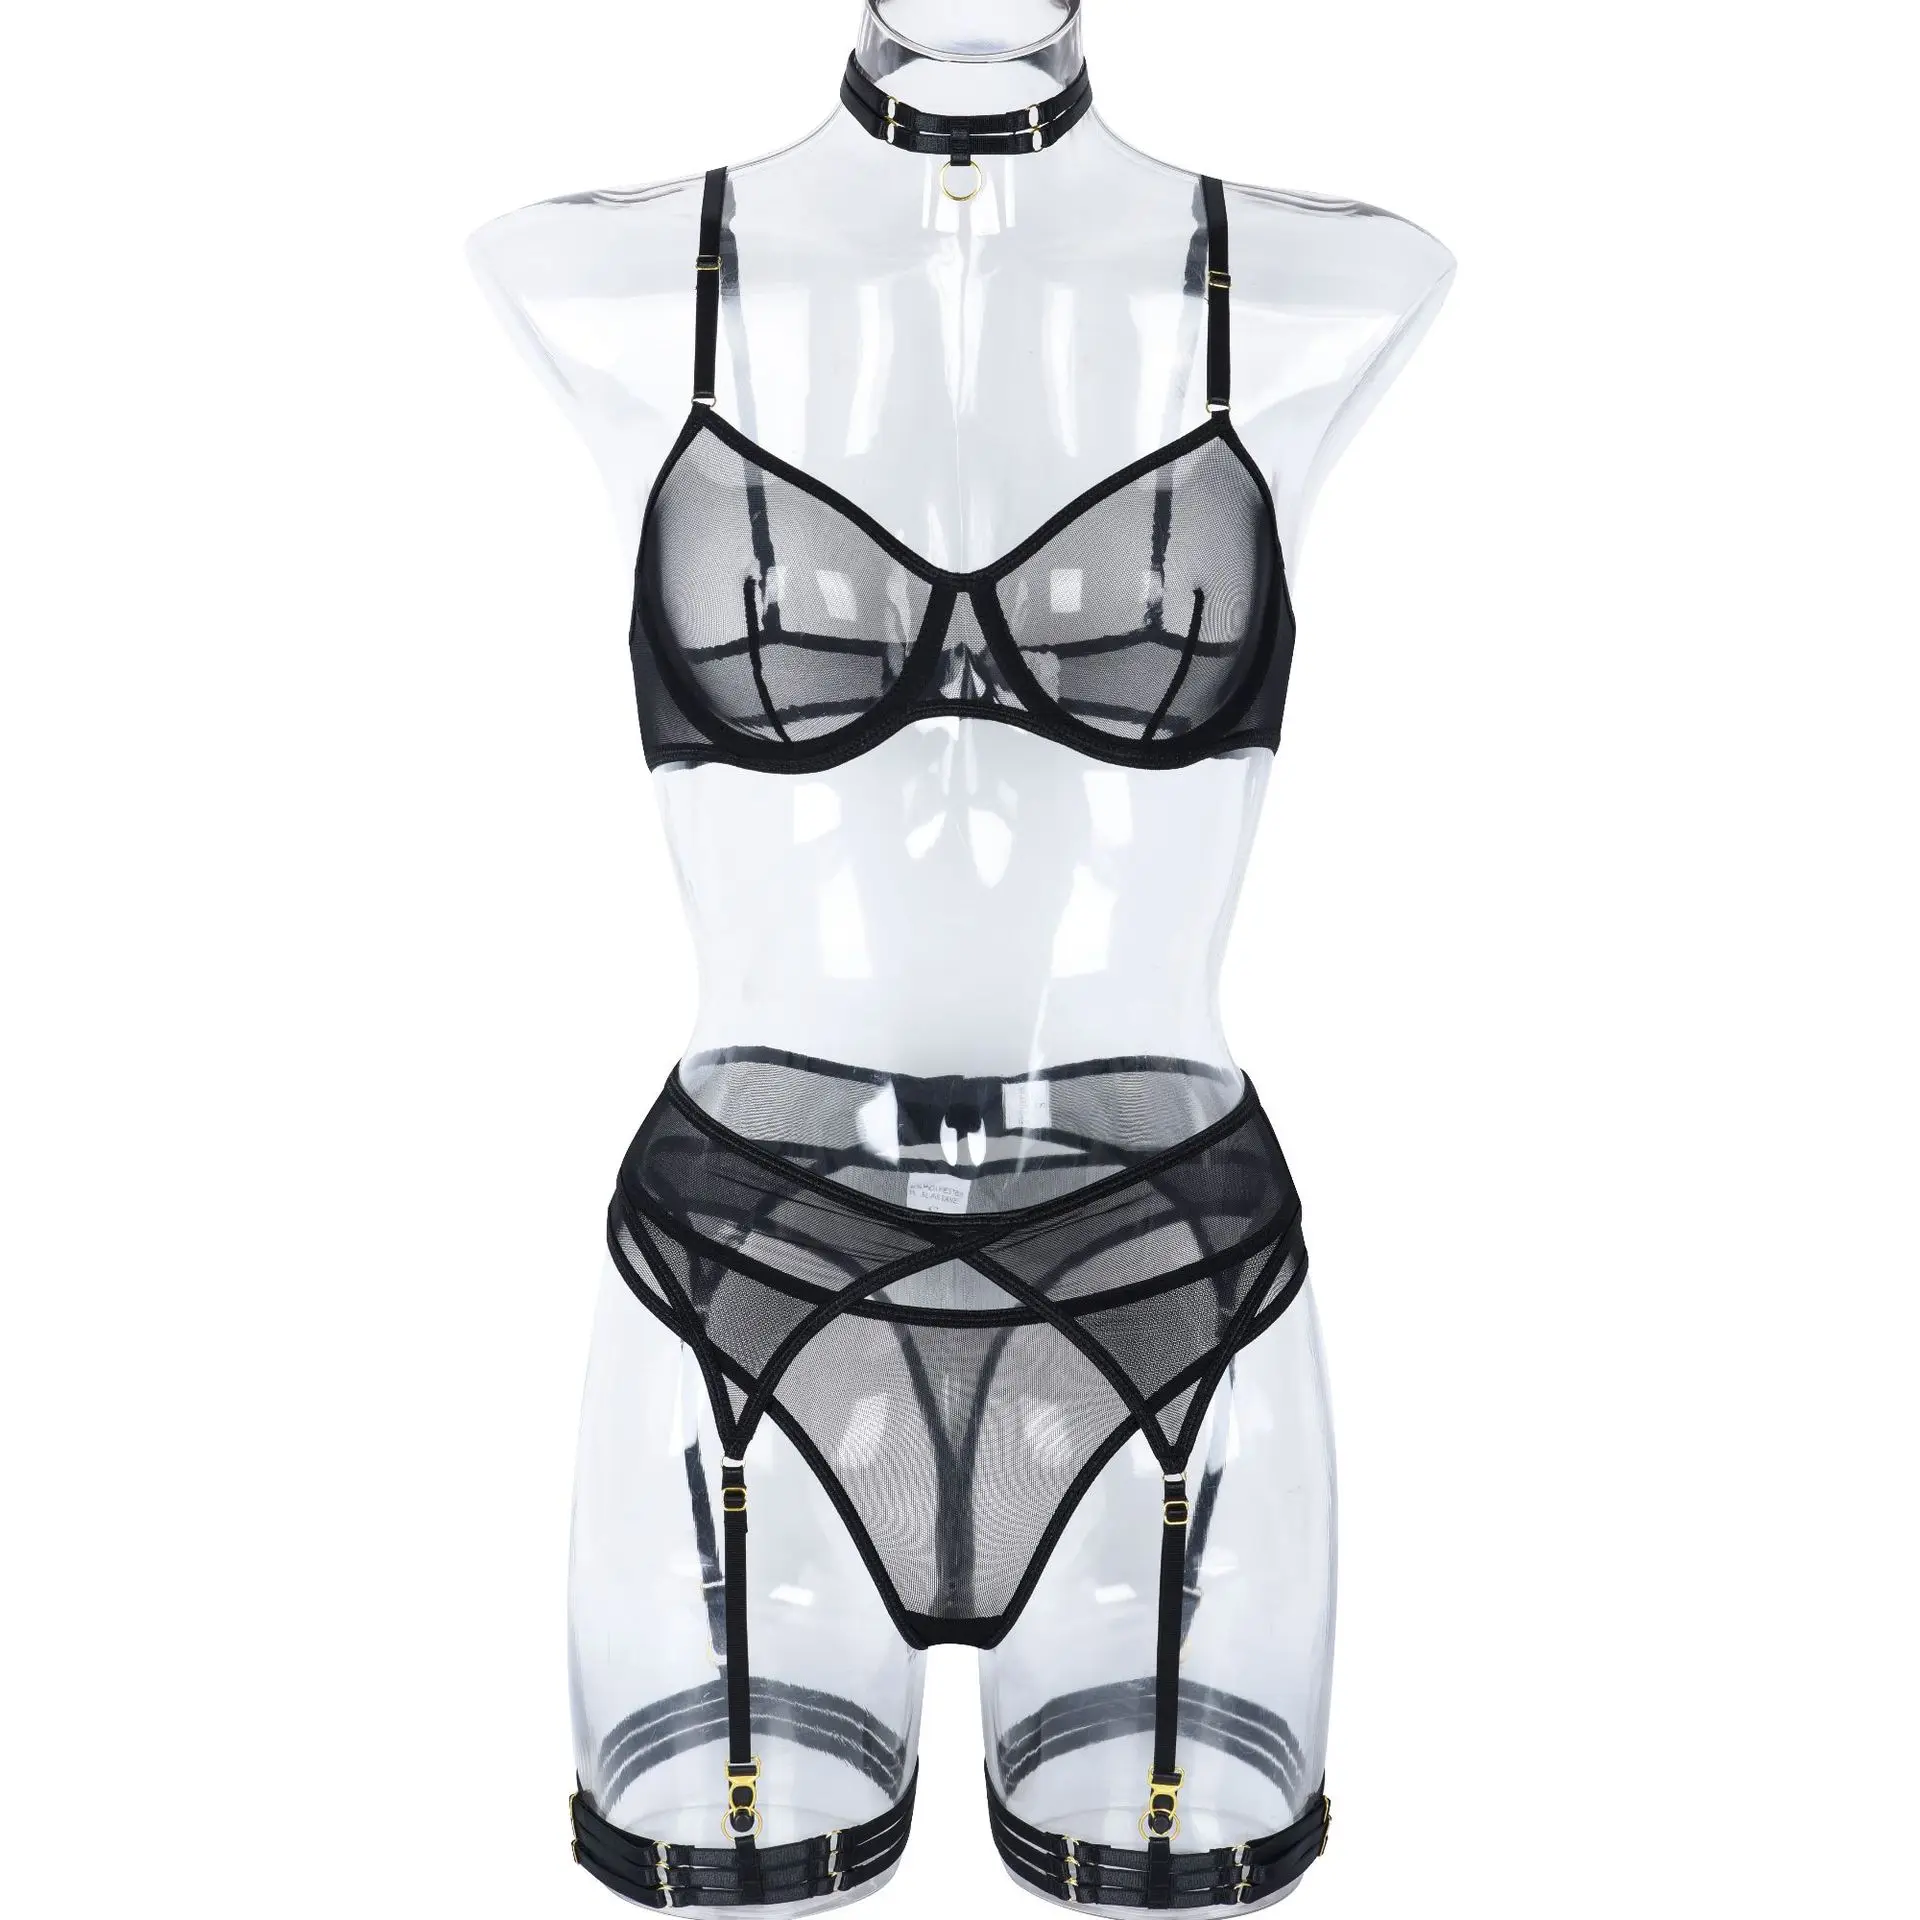 

Sexy Lingerie Fancy Underwear Garter Belt 4-Piece Intimate Bra Brief Sets Sexy Bralette Women Lenceria Brief Sets